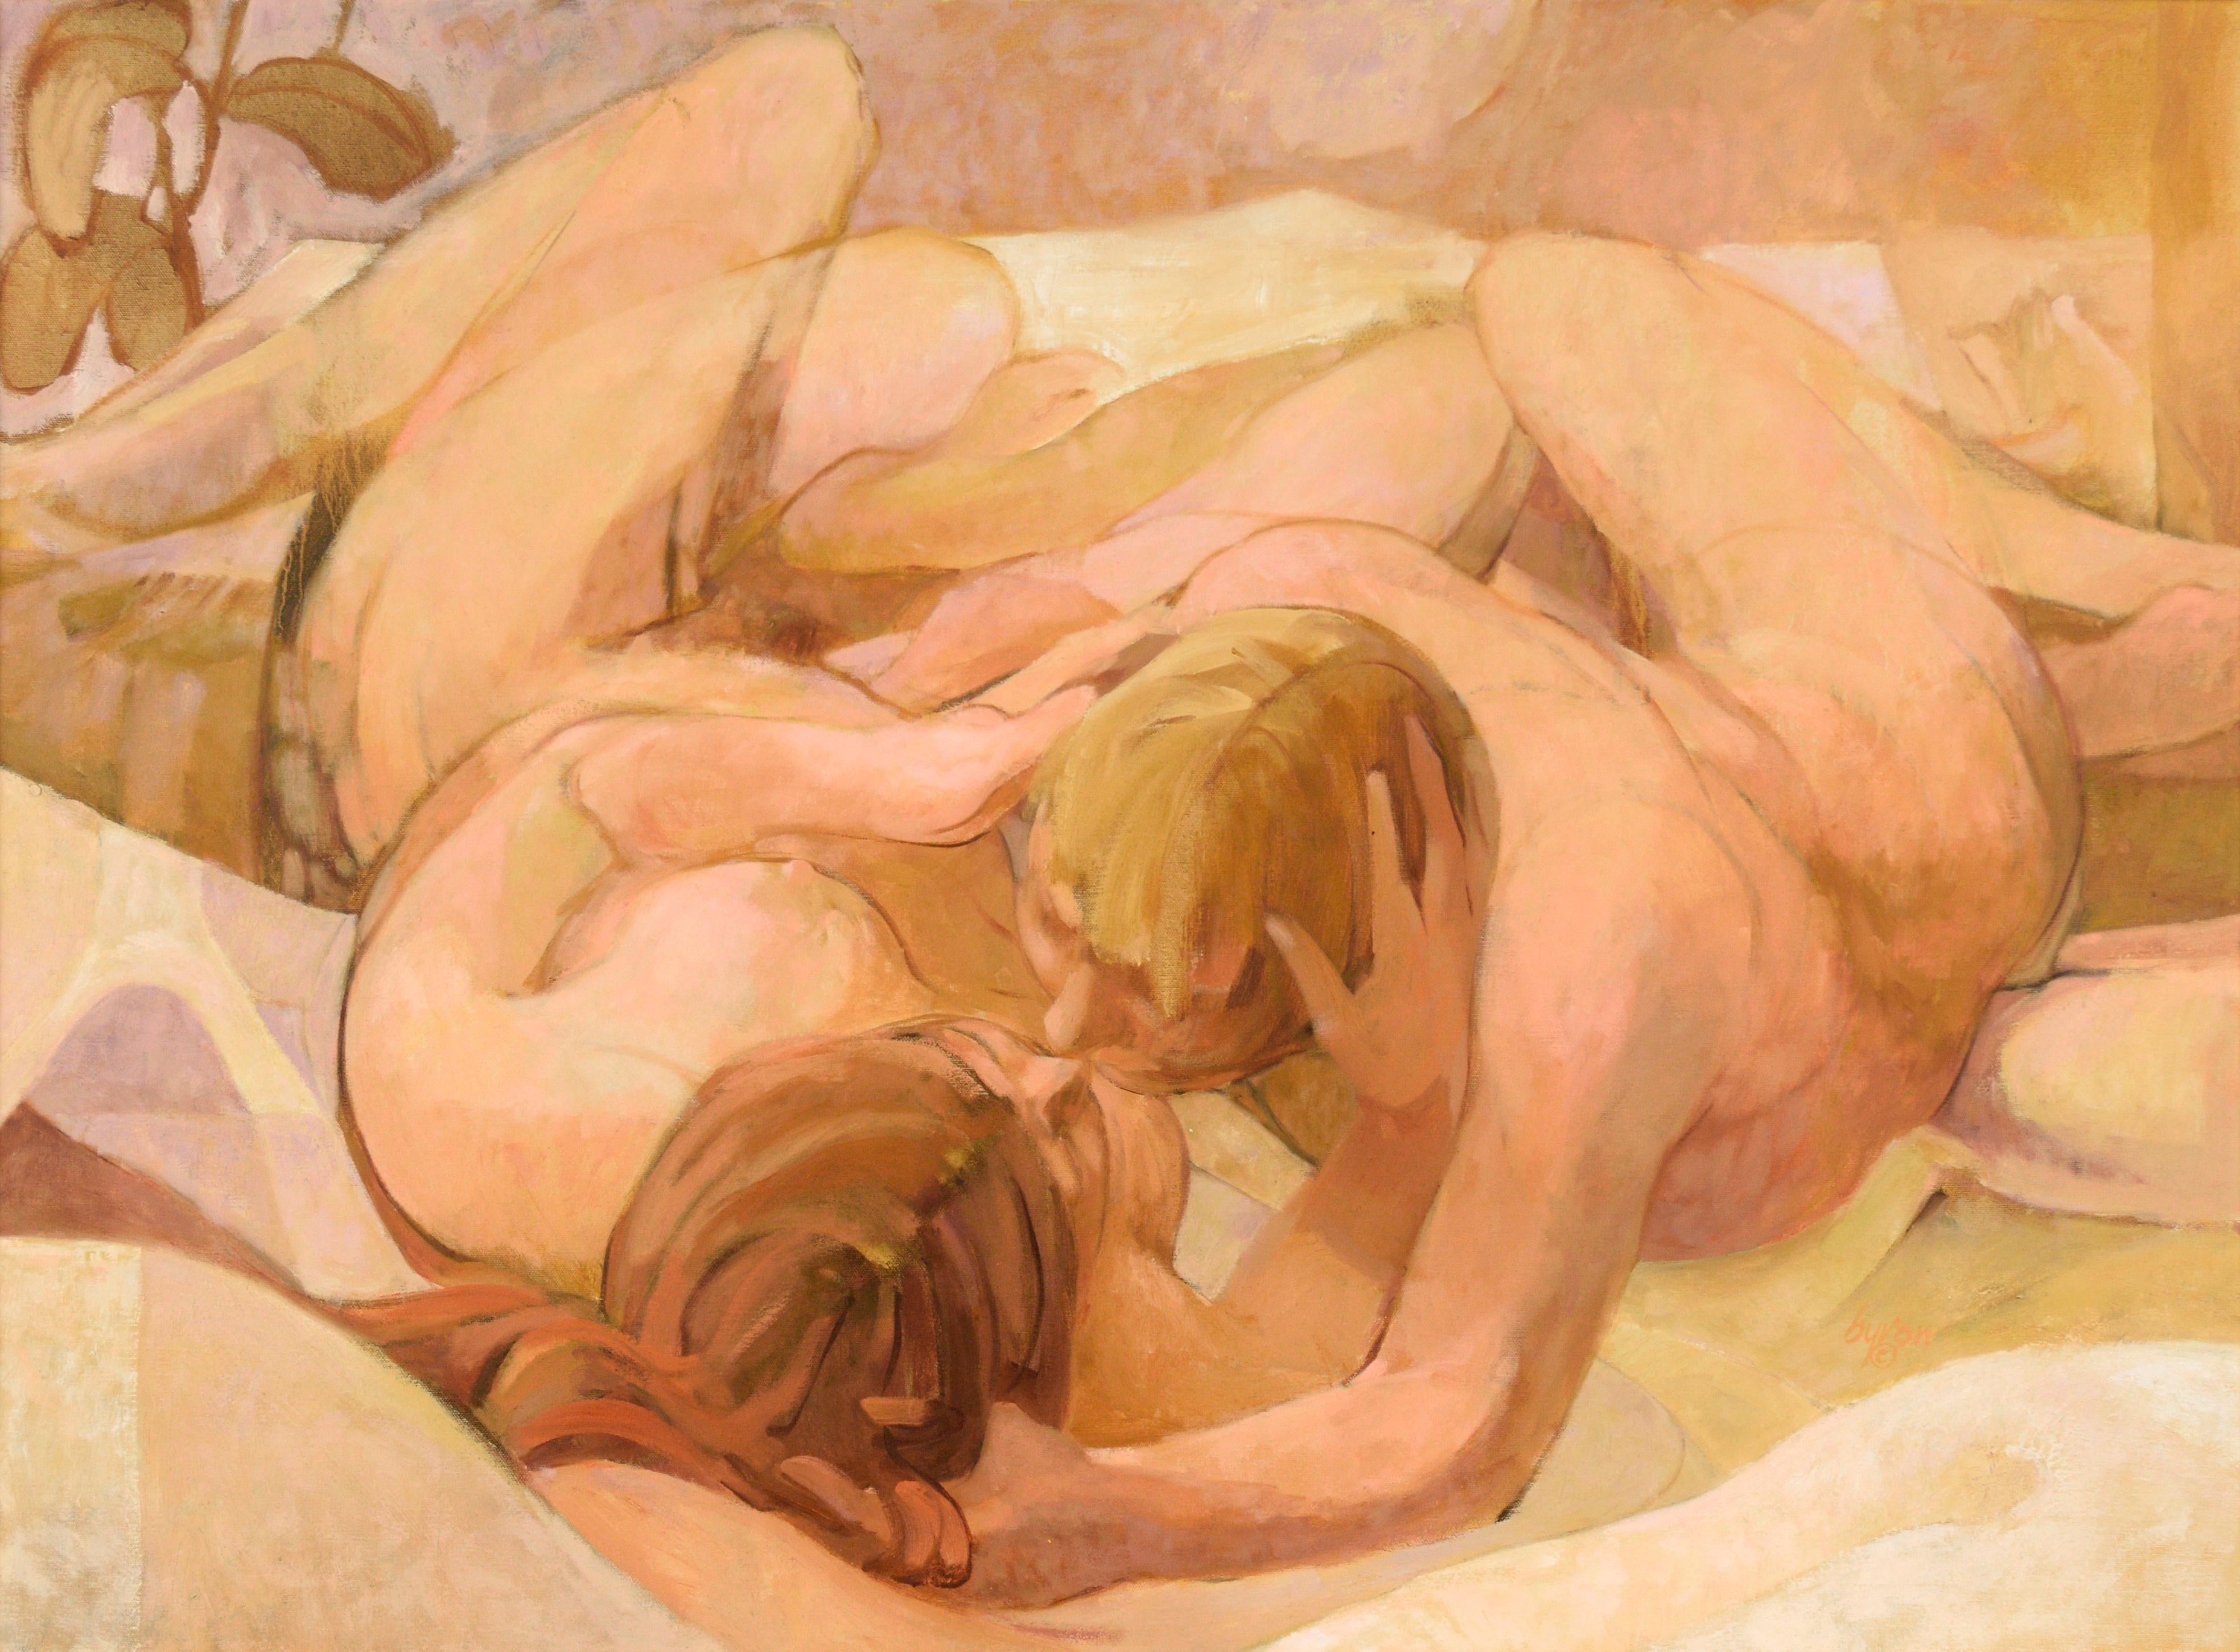 Deux nus dans un lit - Composition figurative à l'huile sur toile « Morning » - Painting de Byron Richard Rodarmel